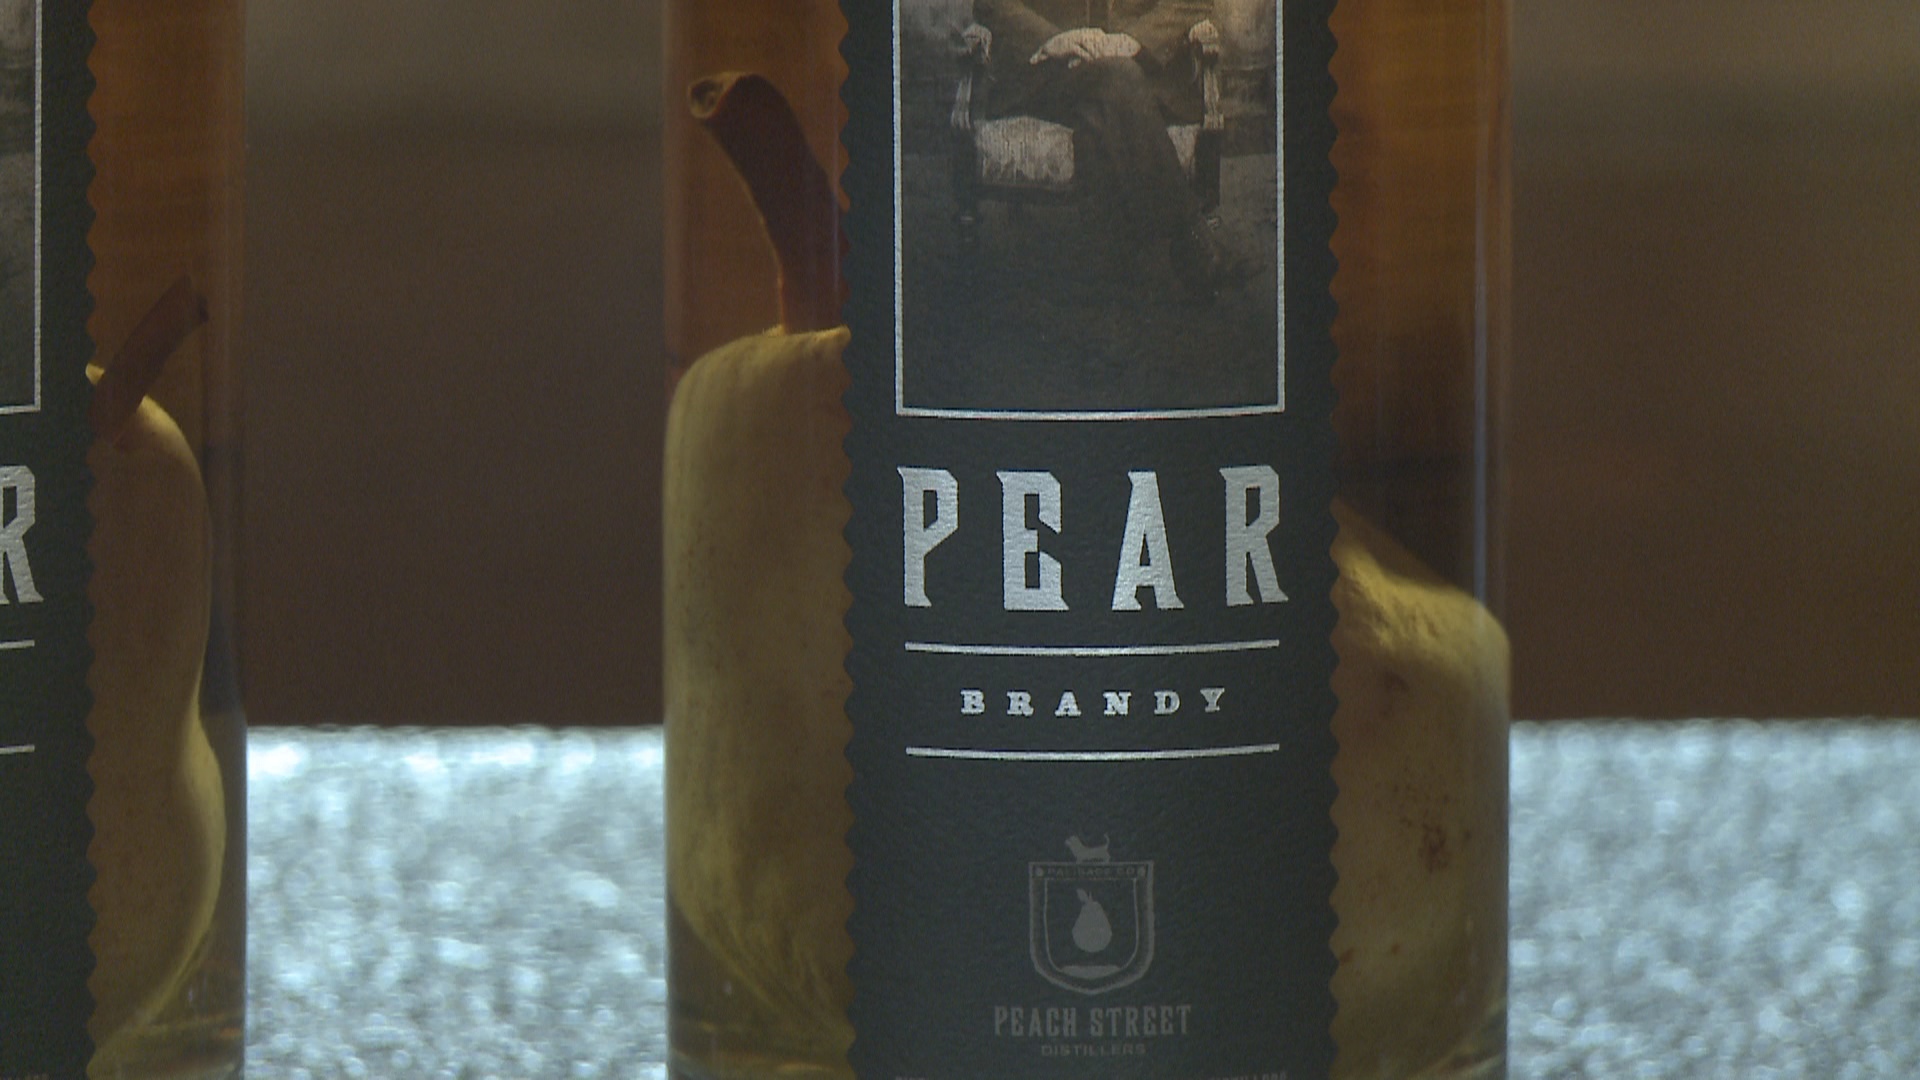 Peach Street Oak Aged Pear Brandy